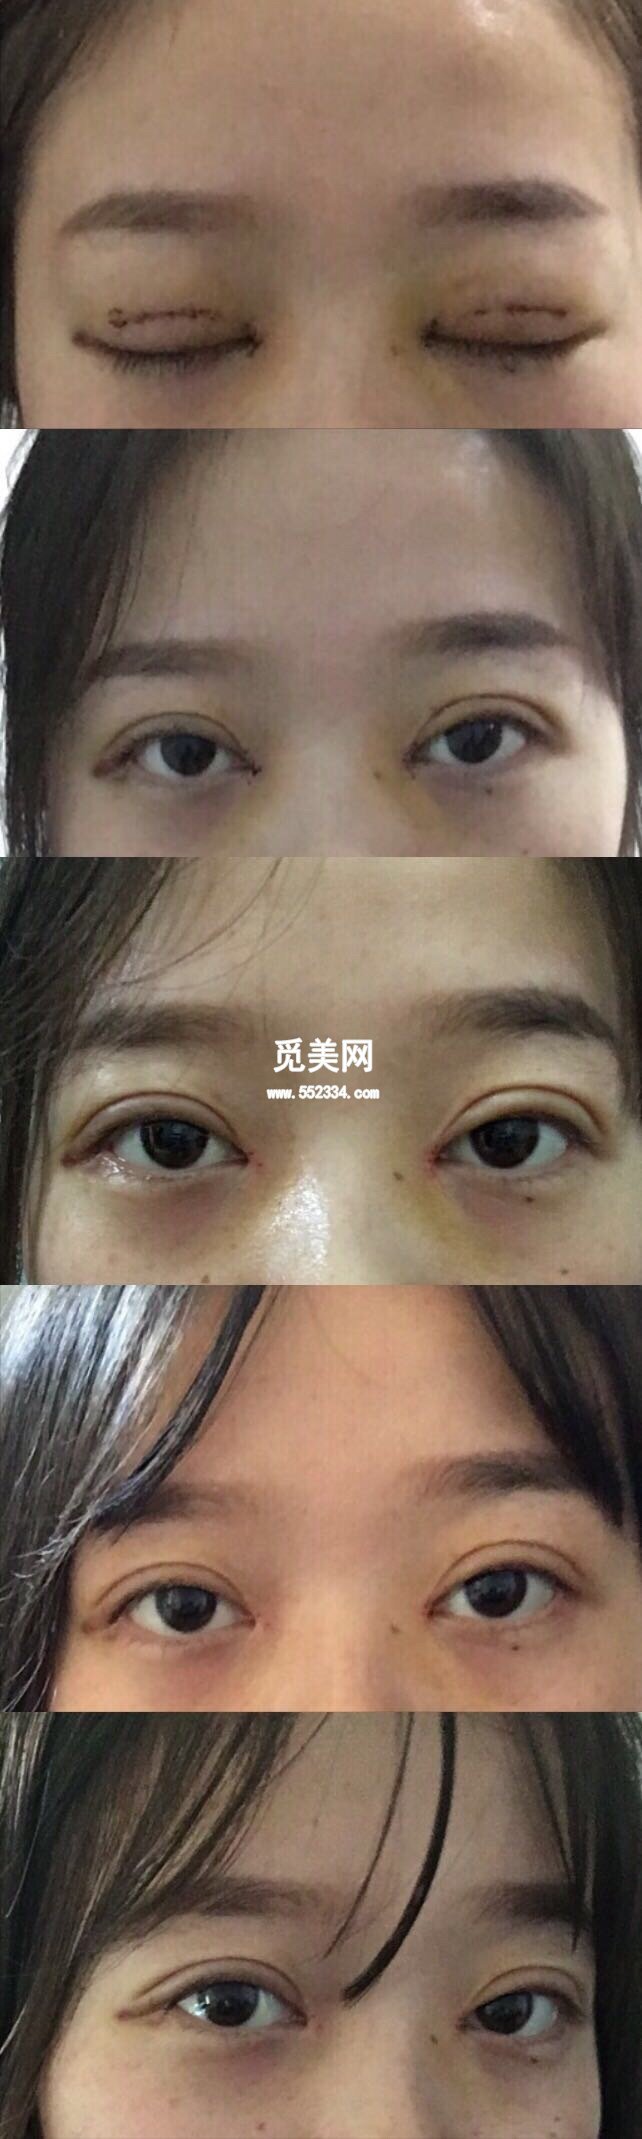 11月24日在武汉中爱祁向峰教授处做的微创双眼皮加开眼角开的7.5mm扇形 案例图分享